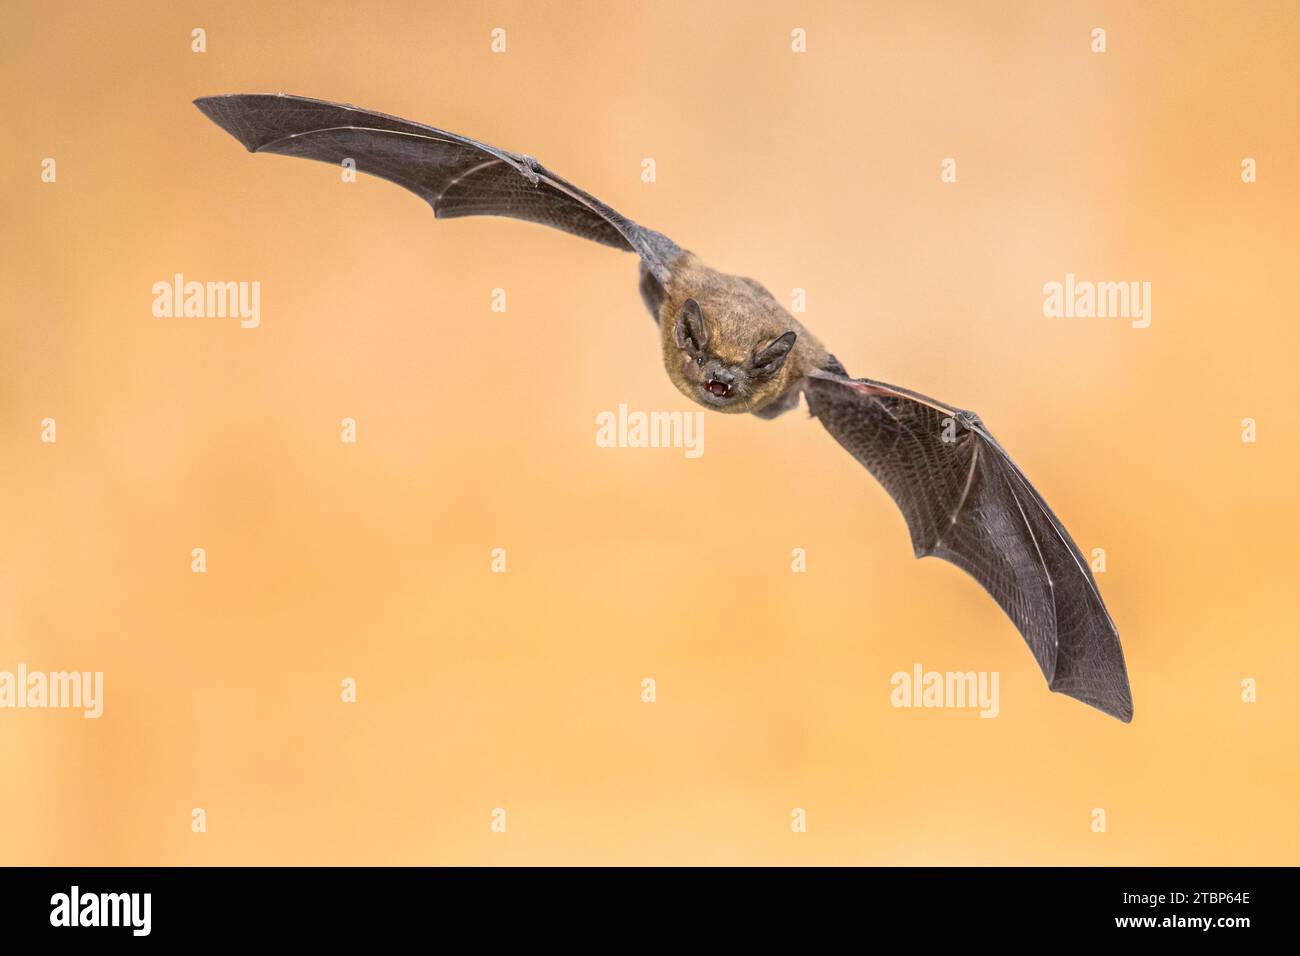 Pipistrello Pipistrelle volante (Pipistrellus pipistrellus) foto ad alta velocità di un animale da caccia su sfondo marrone. Questa specie è conosciuta per la roostina Foto Stock